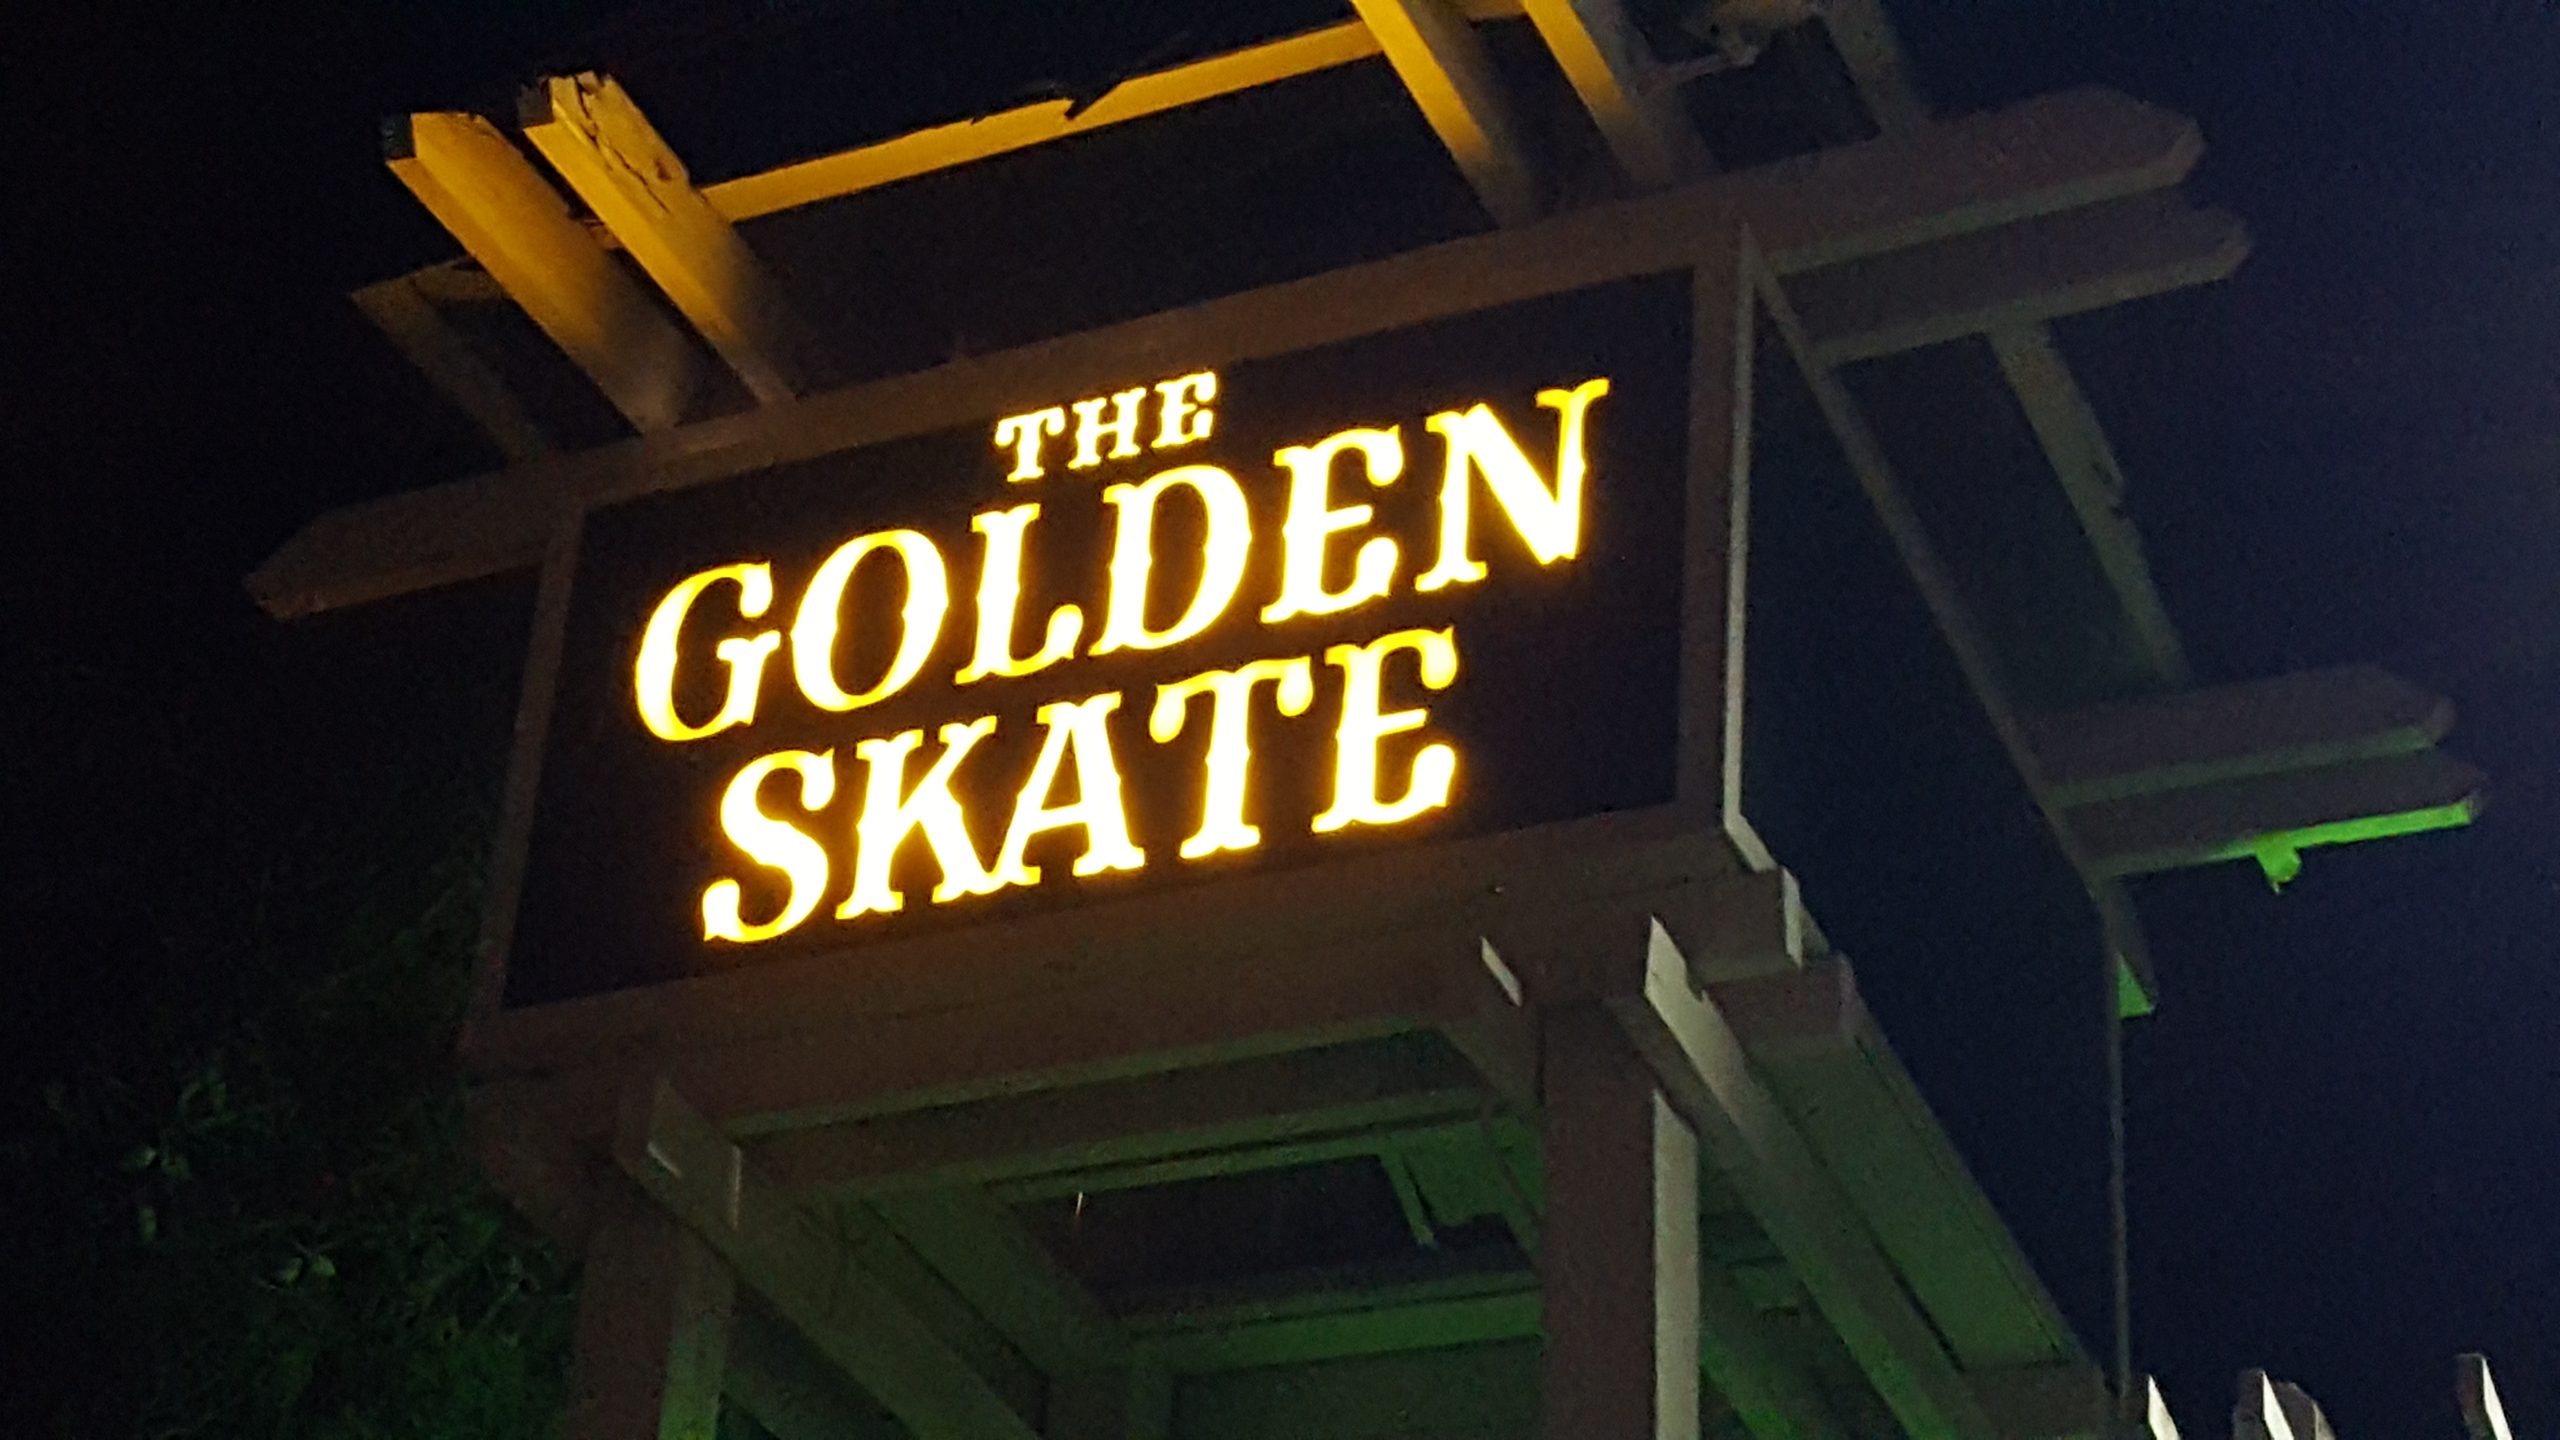 The Golden Skate